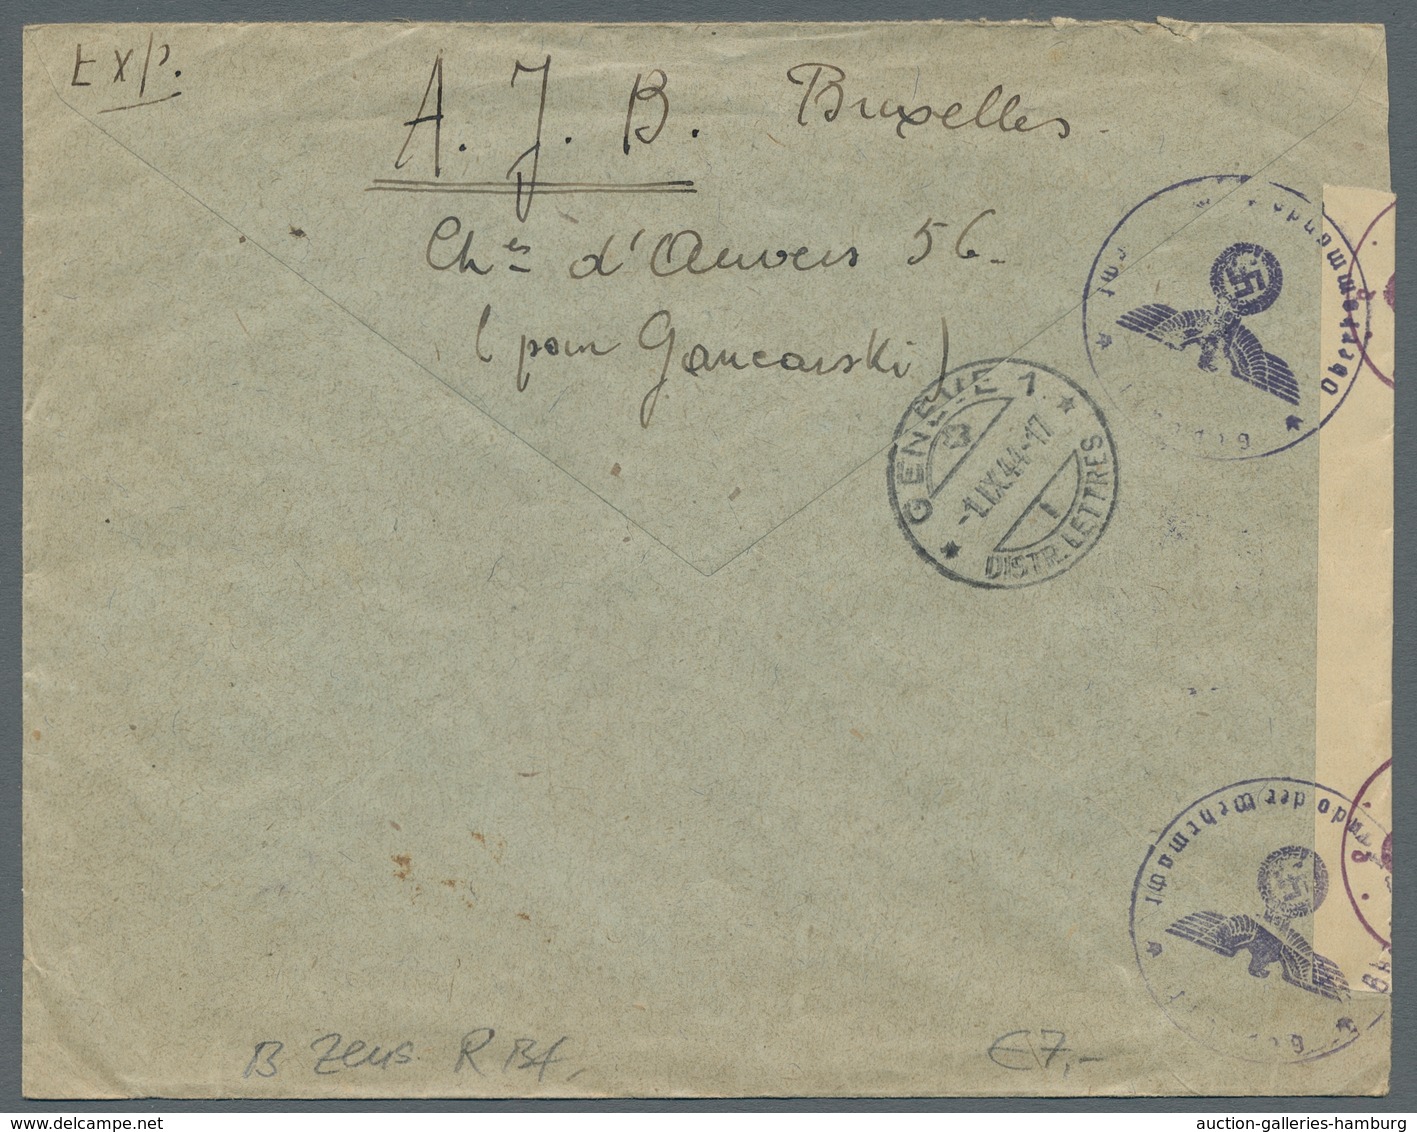 Belgien: 1944, 12 Briefe an das "Office Palästinien" in der Schweiz welche alle deutsche Zensuren au